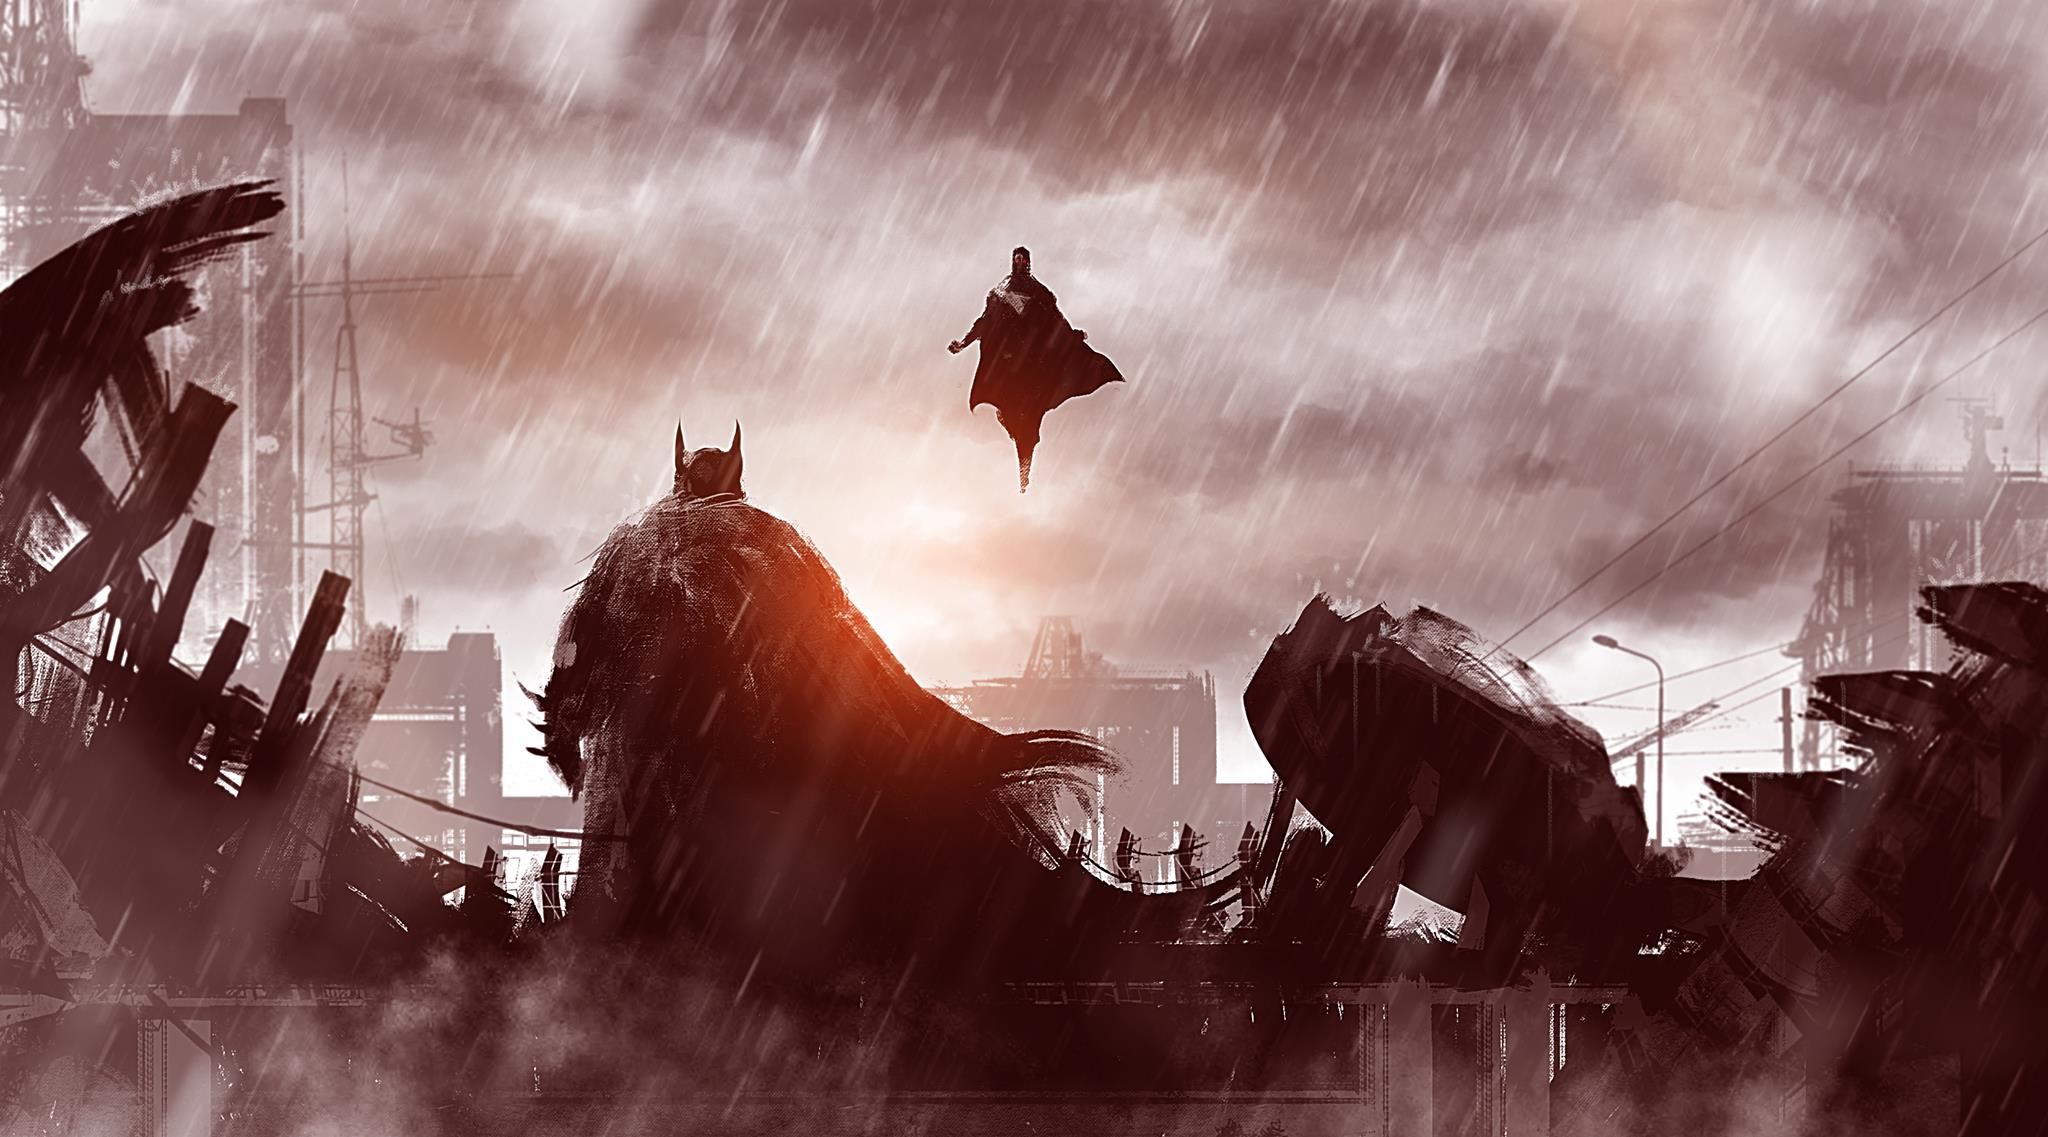 Batman vs Superman Desktop Wallpapers, HD Batman vs Superman Backgrounds,  Free Images Download